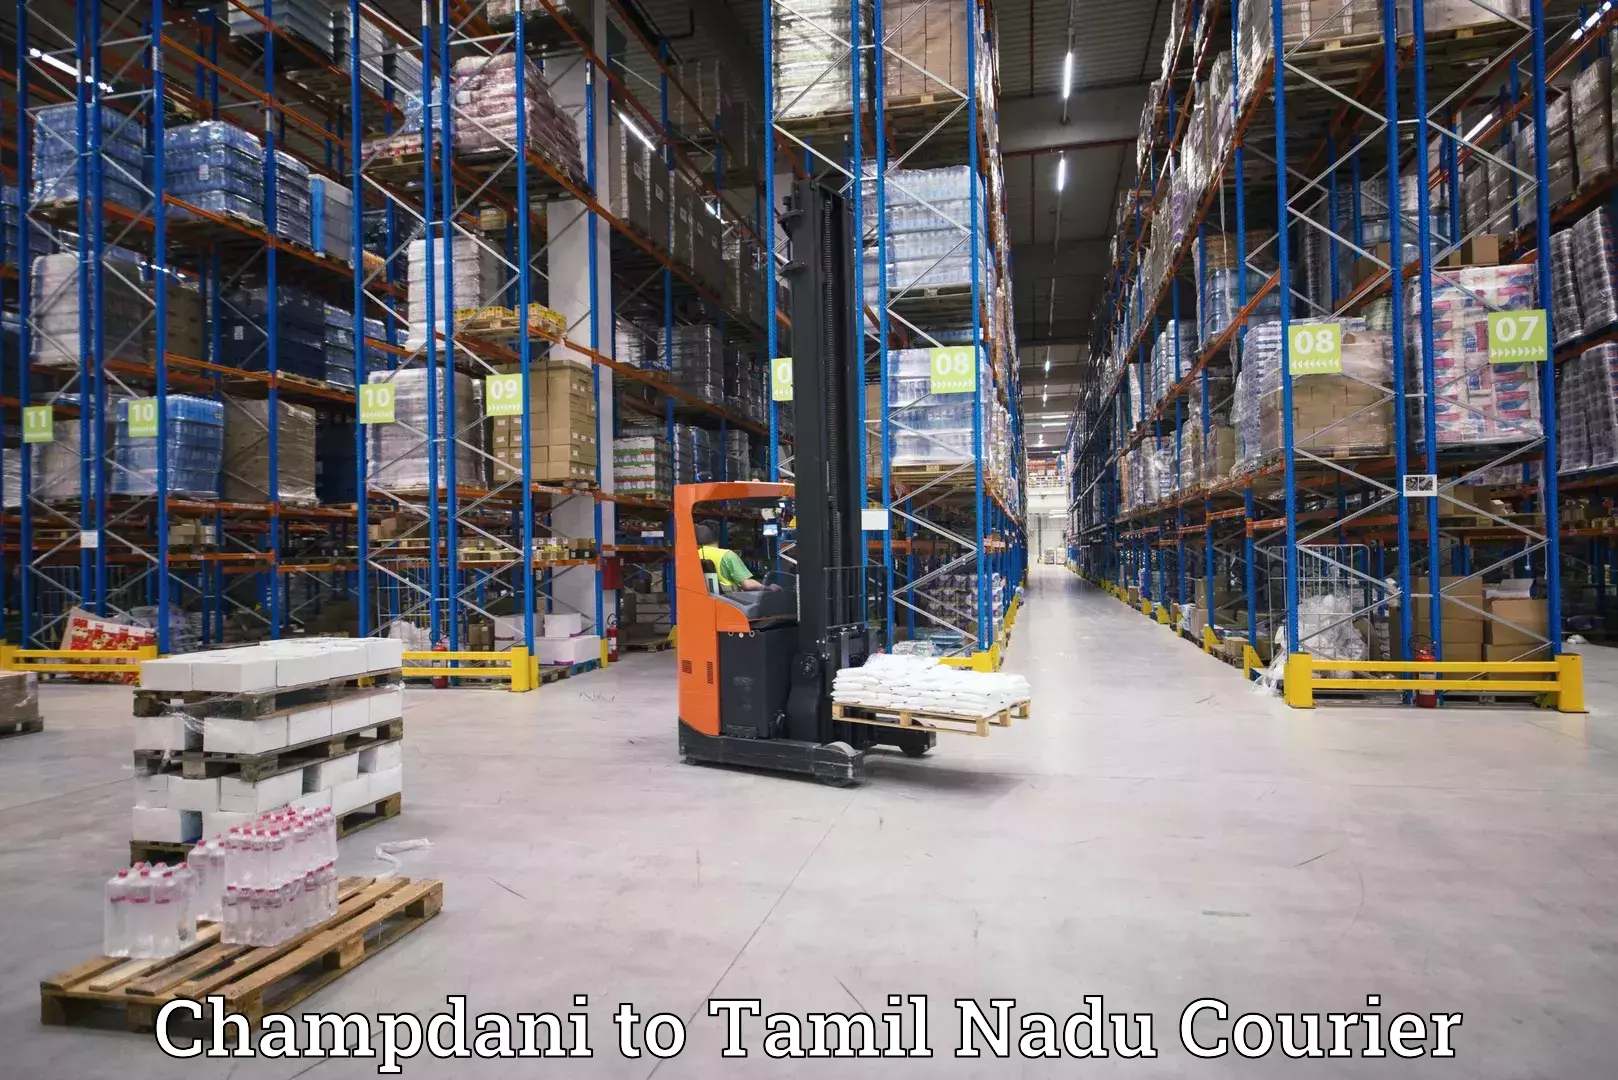 High-performance logistics Champdani to Tamil Nadu